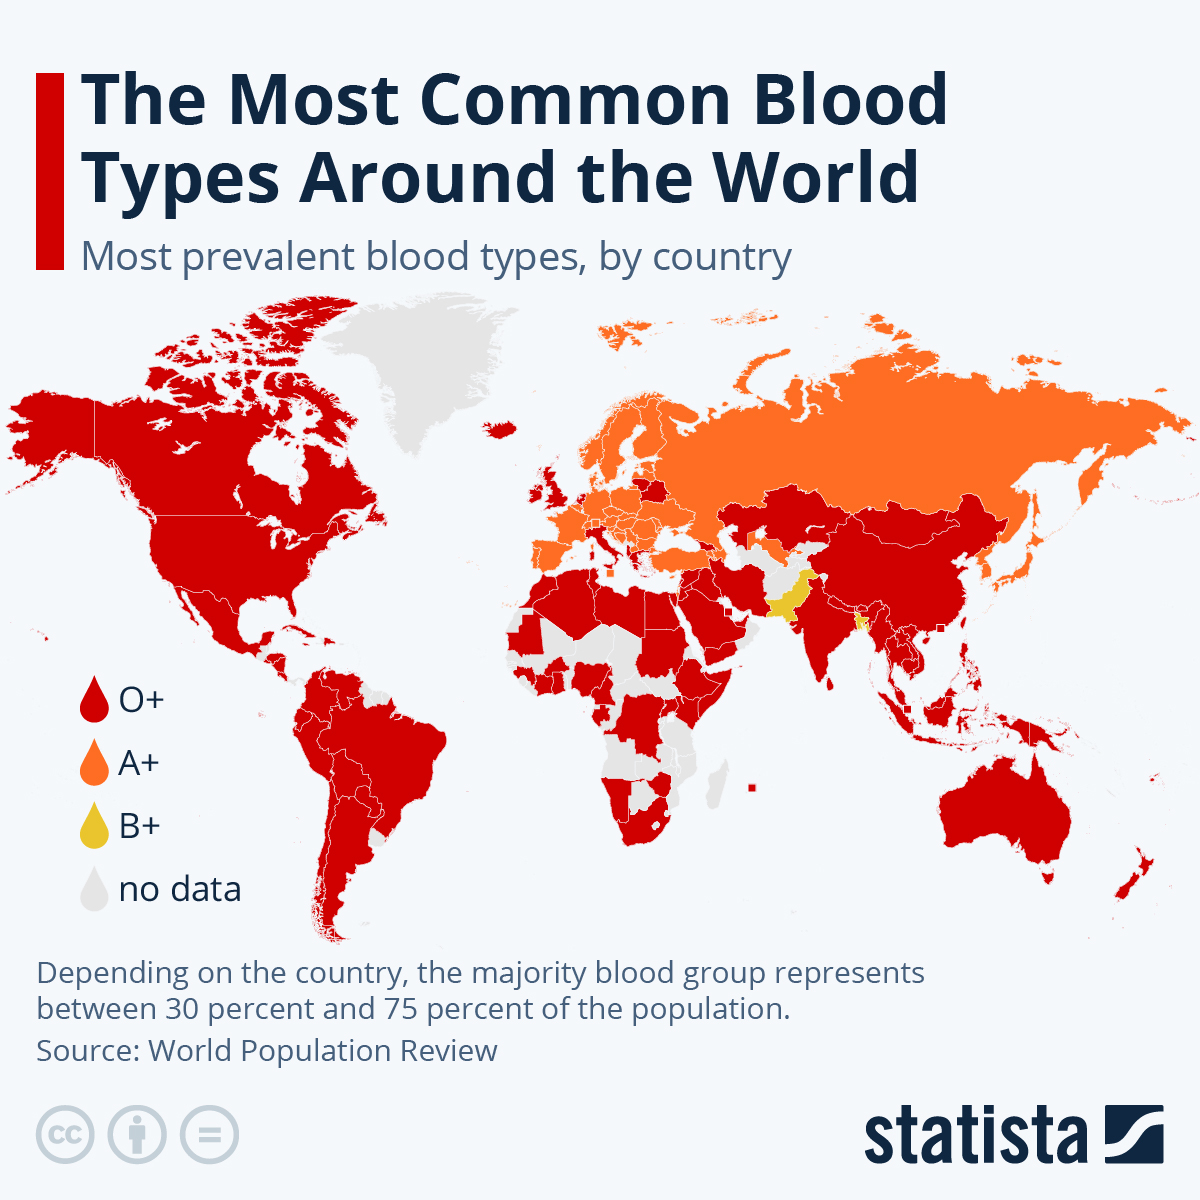 世界各国で最も多い血液型を示した地図。 x.gd/8YmGt 赤がO型、オレンジがA型、黄色がB型、灰色はデータなし。A型は大陸ヨーロッパ～ロシア～東アジアにまとまっており、他地域ではO型が卓越するという傾向が明瞭。B型が最も多いのはパキスタンとバングラデシュ。 (Credit: statista)